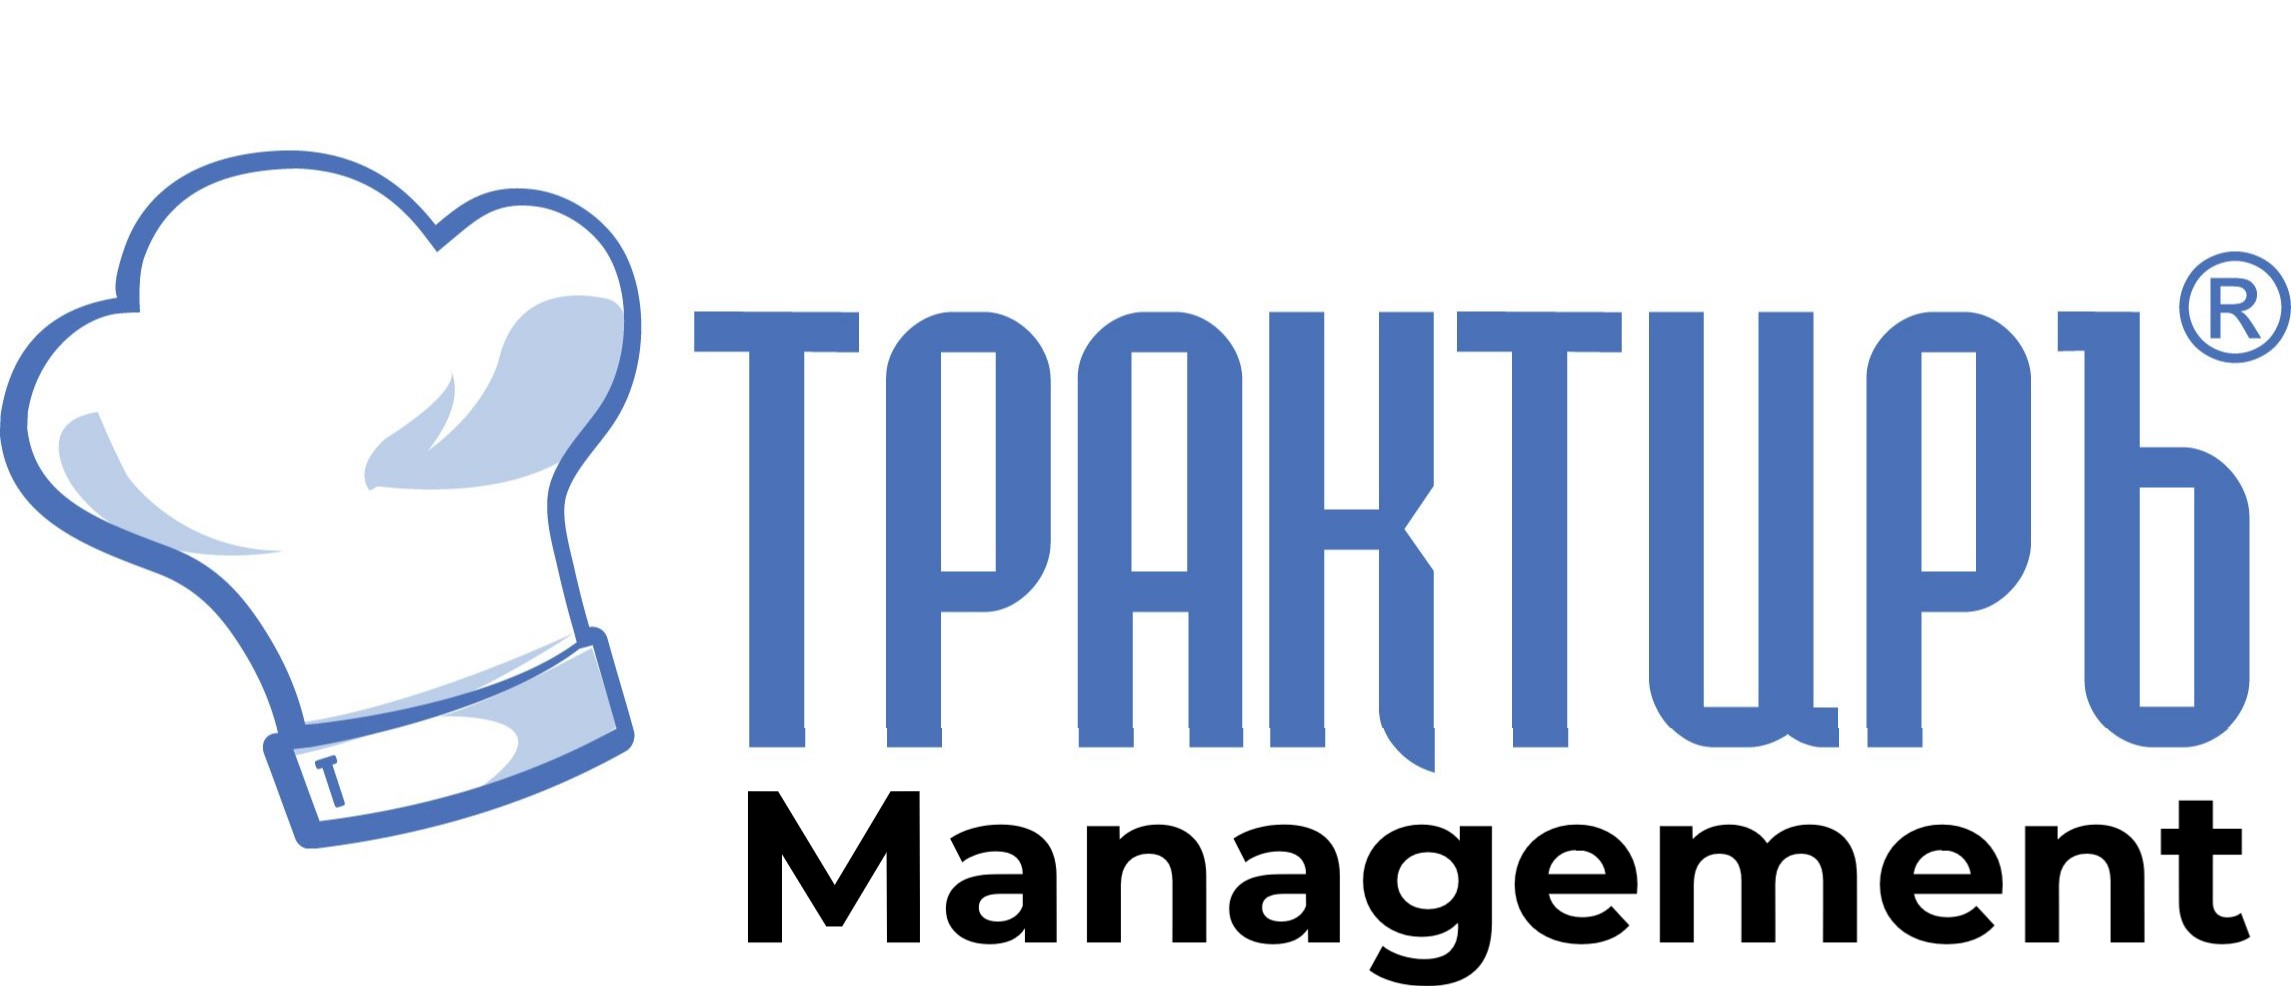 Трактиръ: Management в Ульяновске